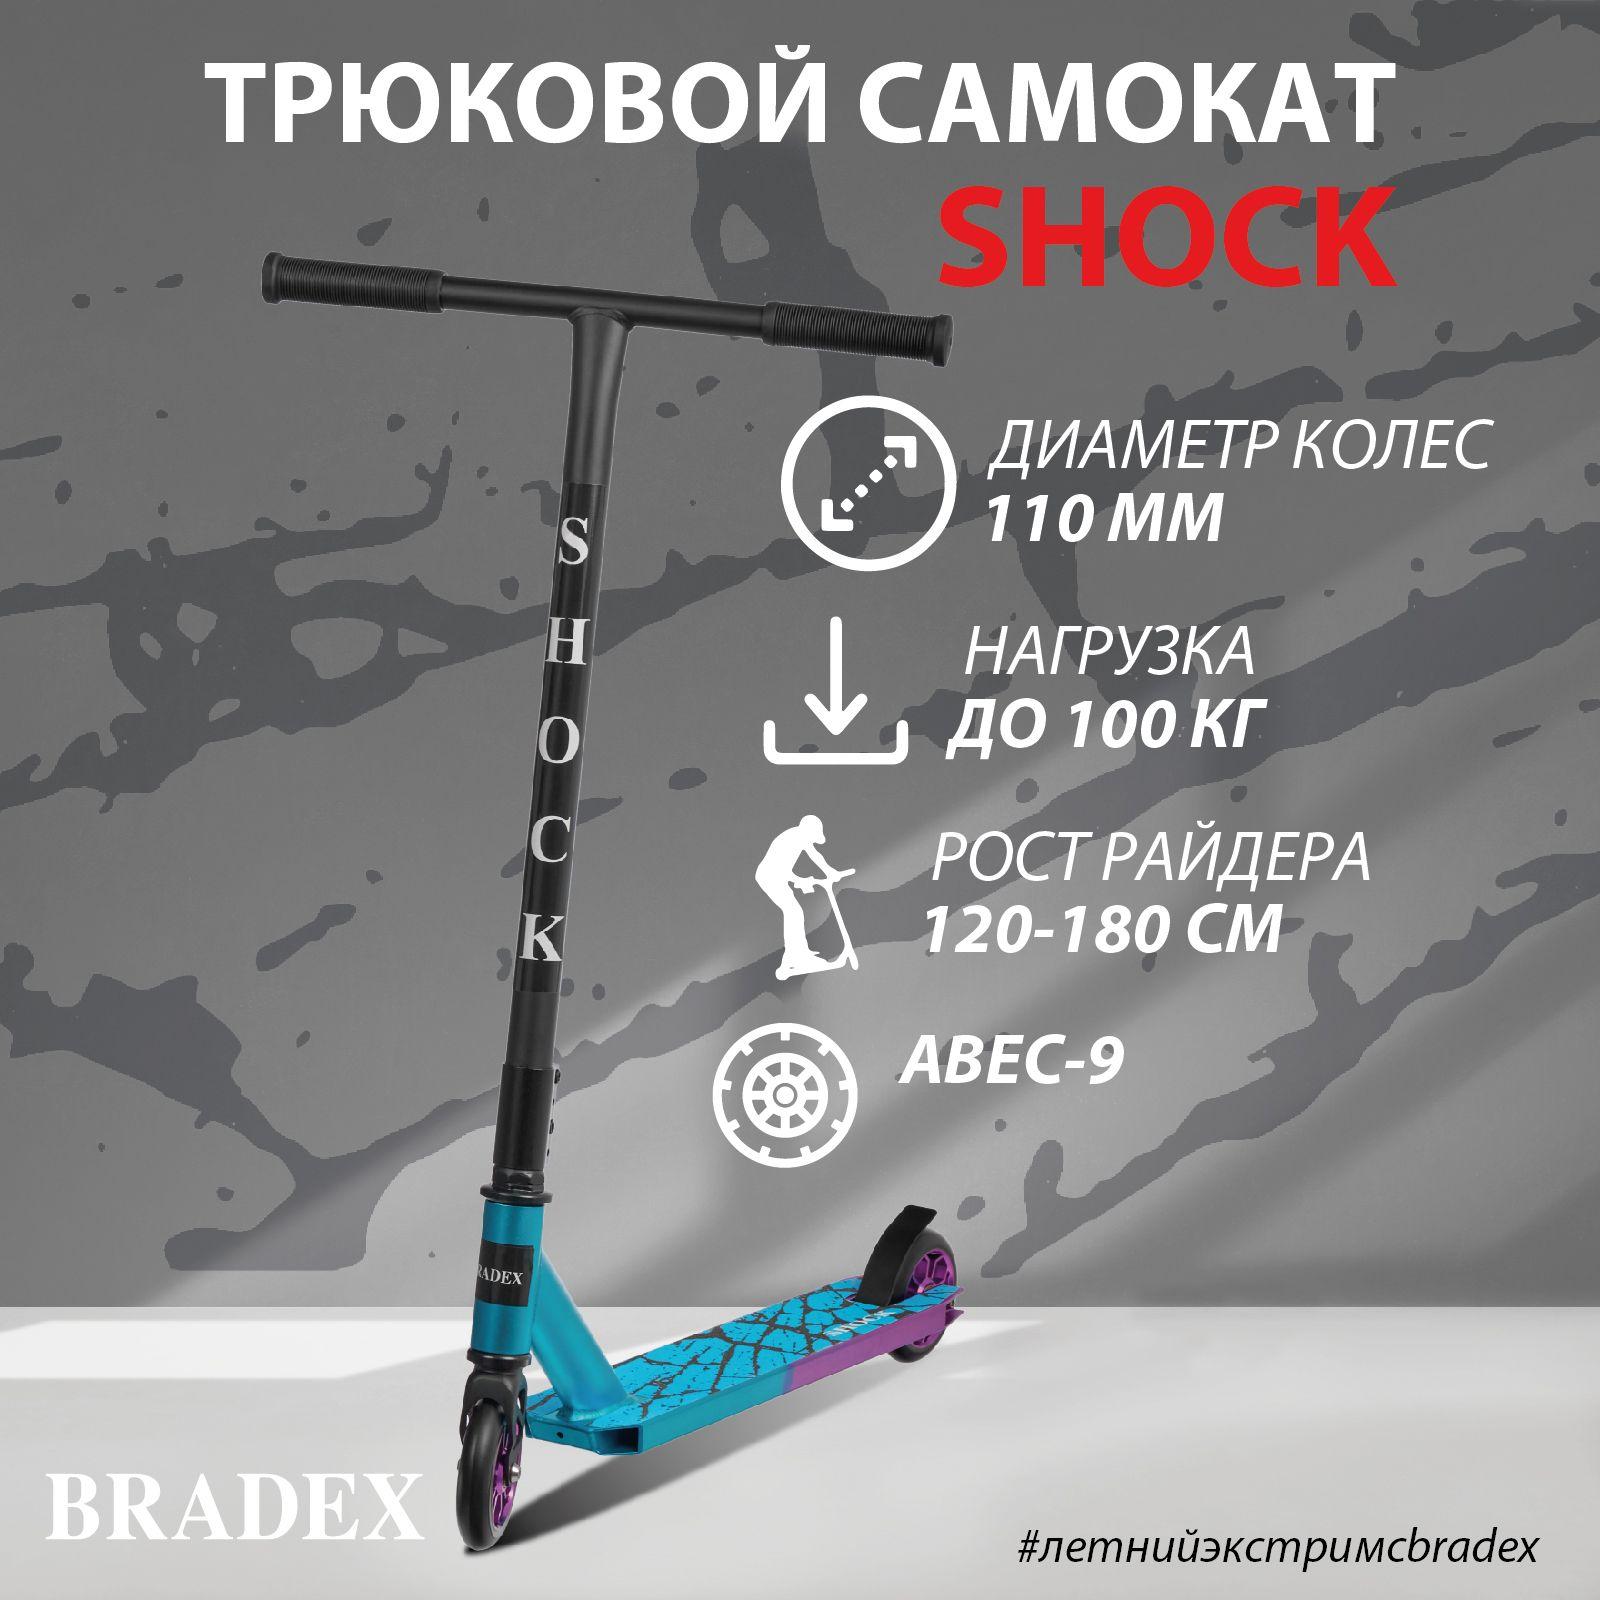 Трюковой самокат двухколесный для подростков и взрослых BRADEX (Брадекс) SHOCK, ABEC-9, покрытие oxidation surface, колеса 110 мм, голубой